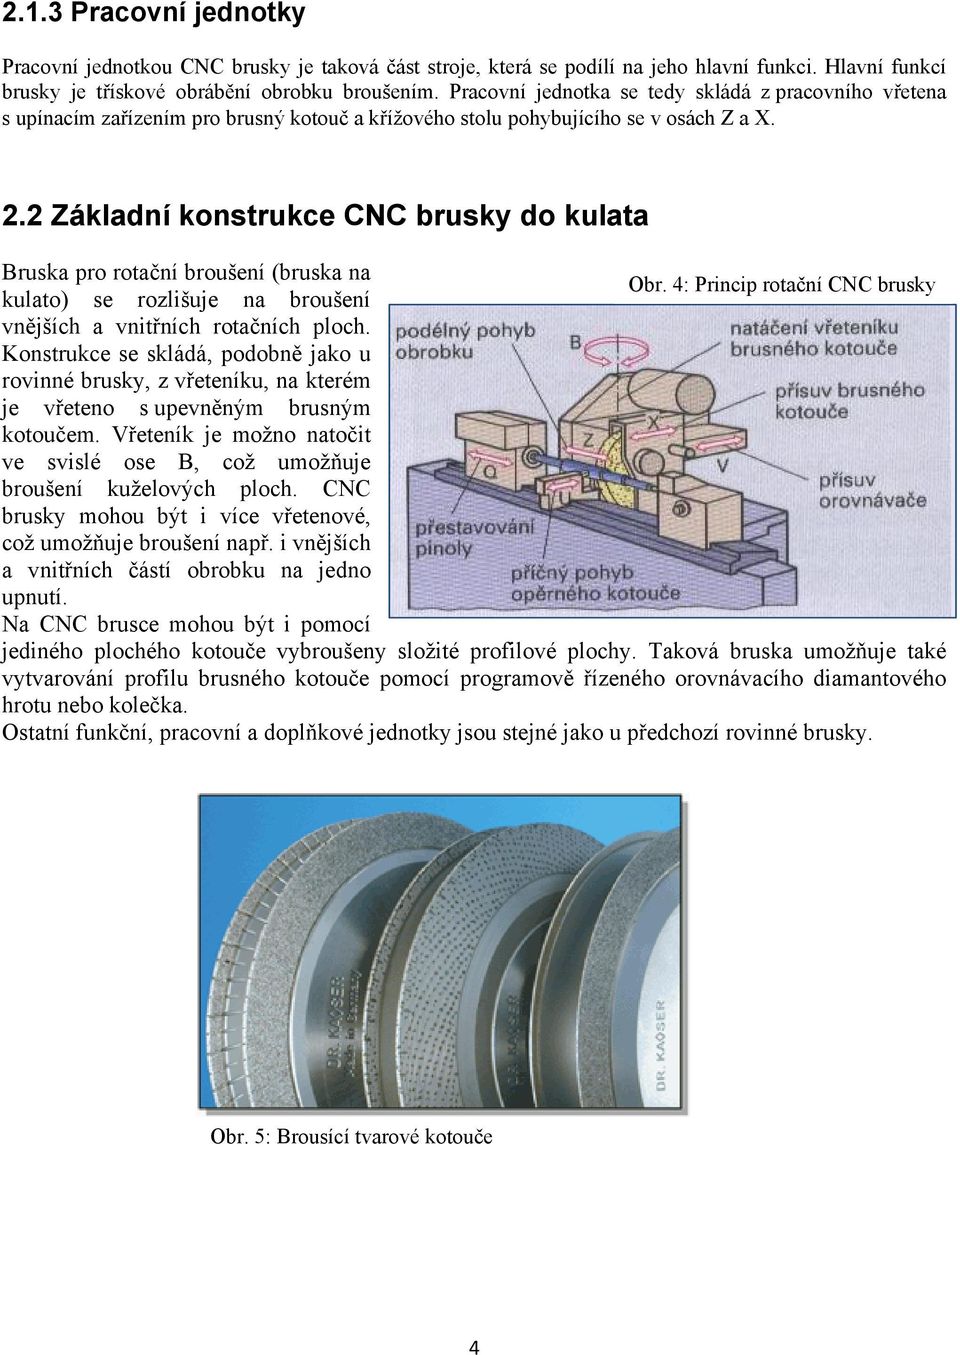 2 Základní konstrukce CNC brusky do kulata Bruska pro rotační broušení (bruska na Obr. 4: Princip rotační CNC brusky kulato) se rozlišuje na broušení vnějších a vnitřních rotačních ploch.